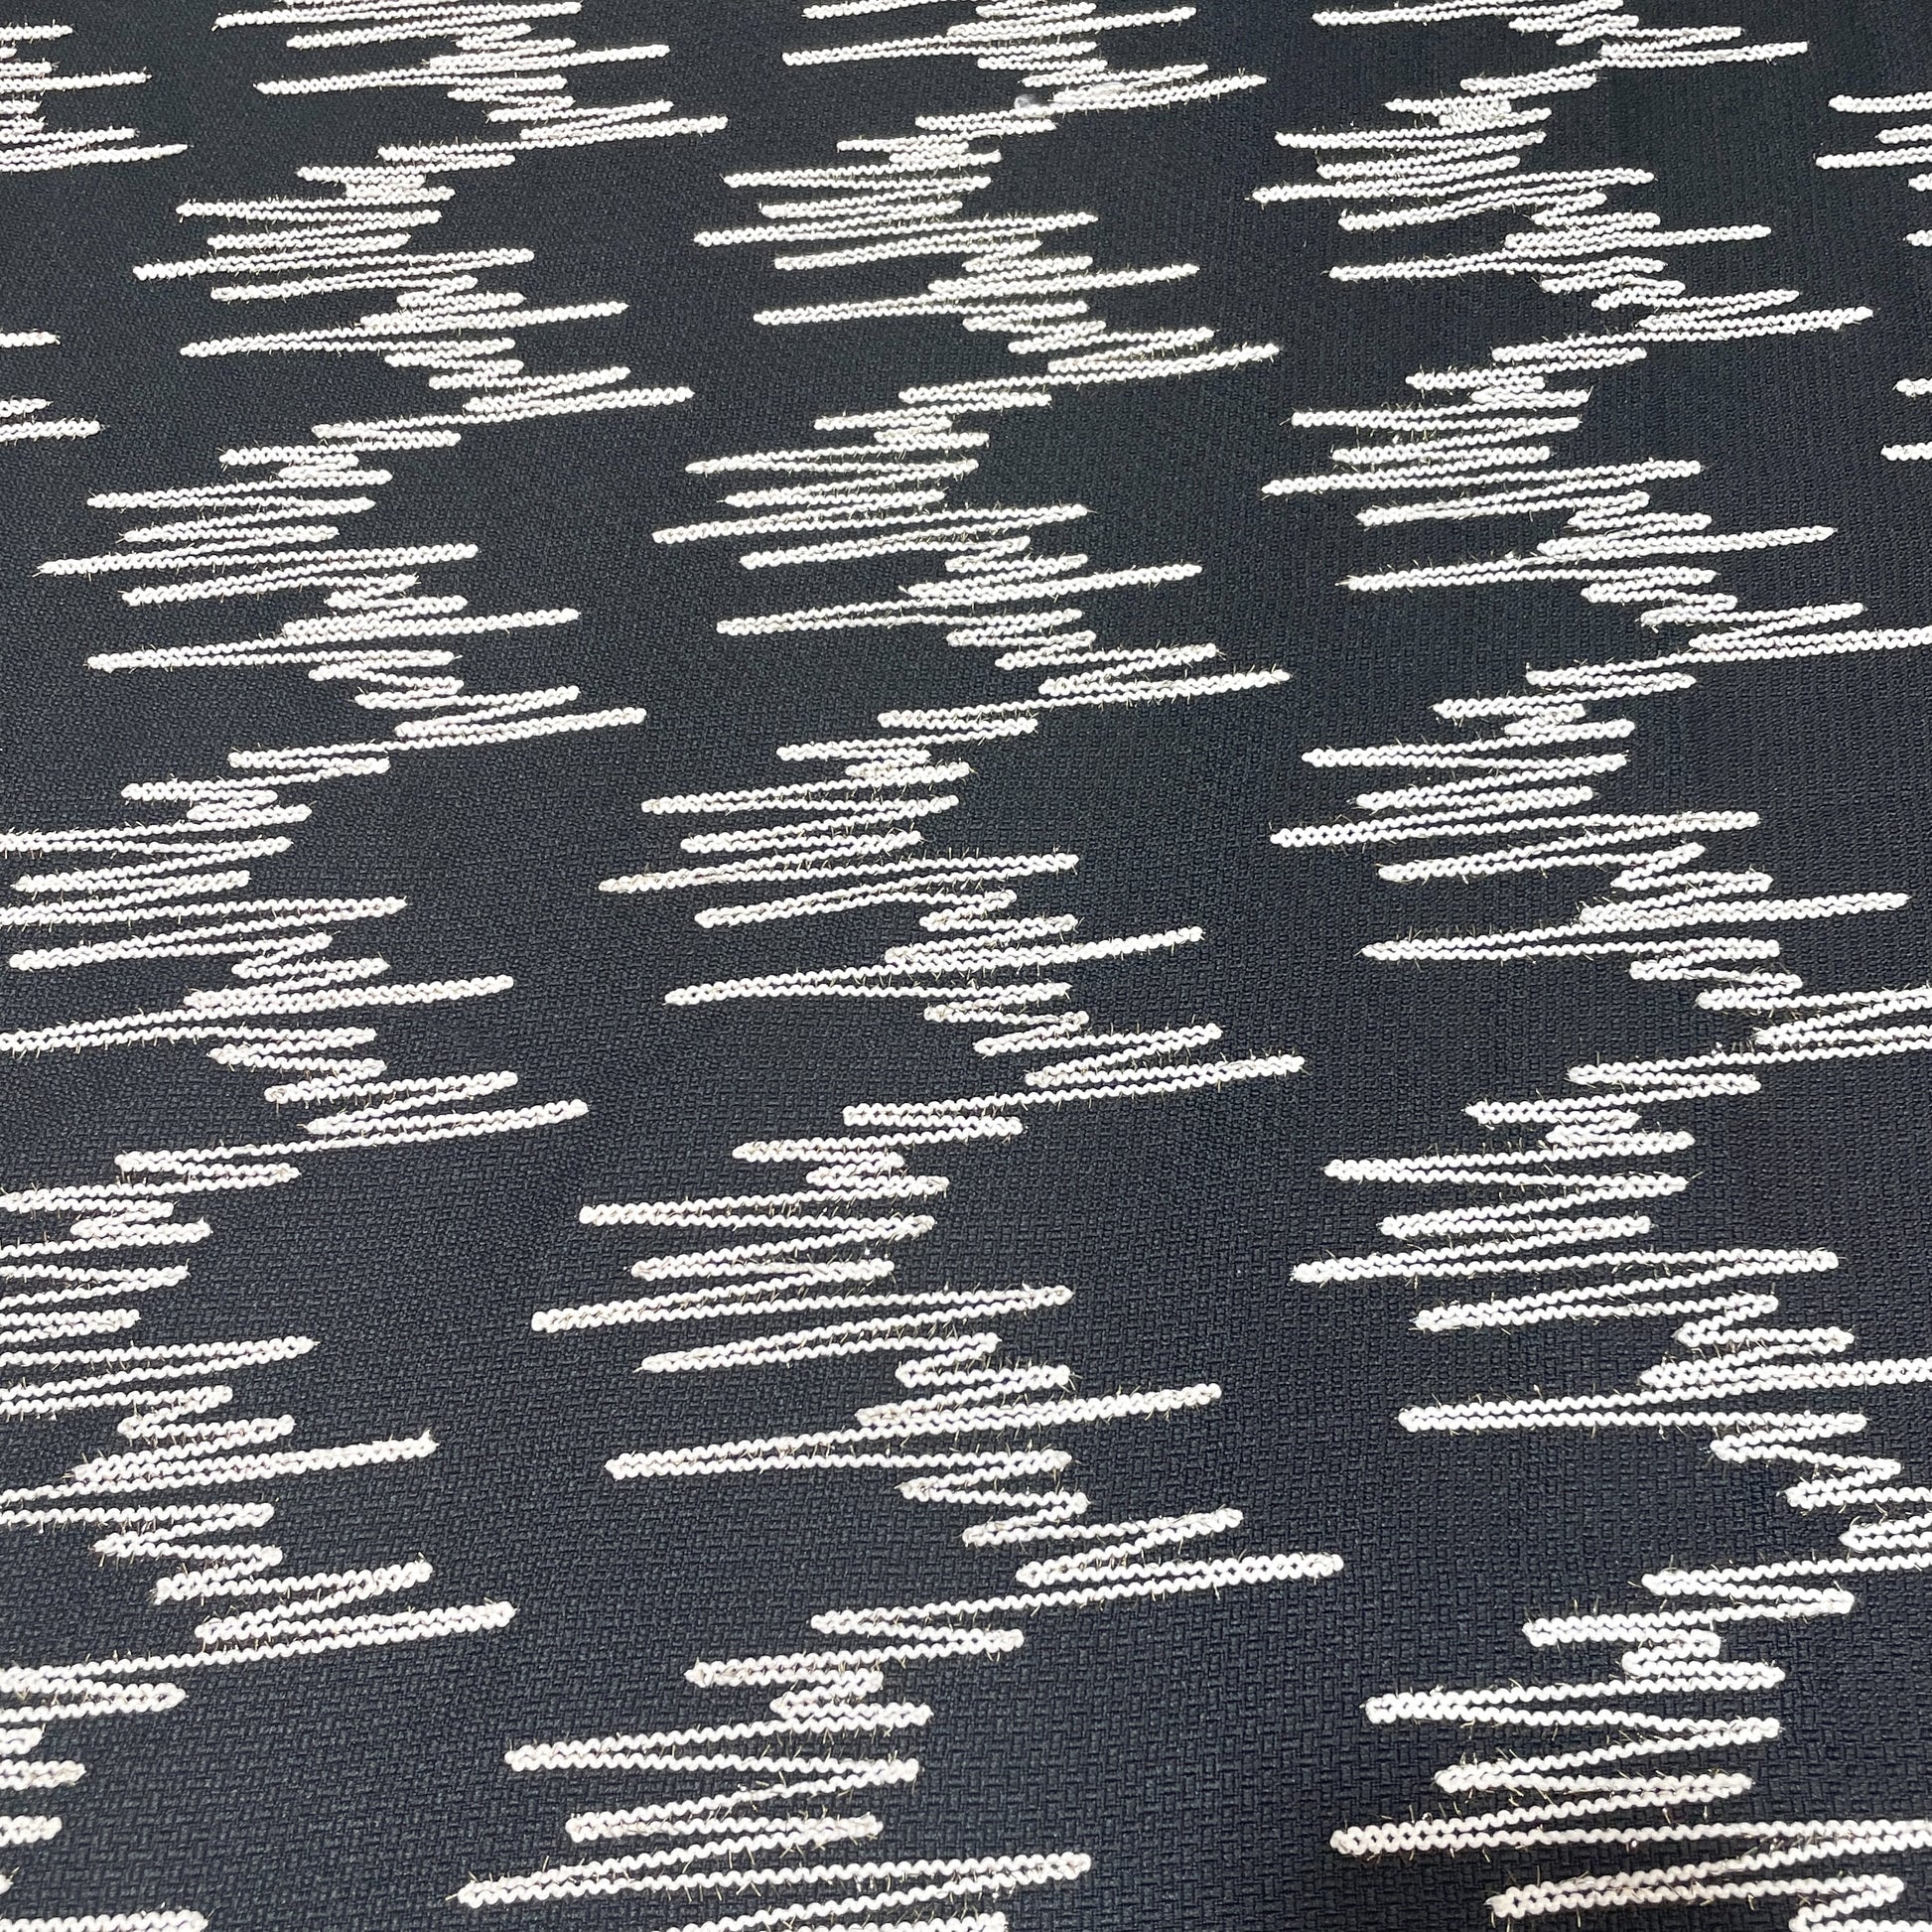 Premium Black Abstract Handloom Tweed Fabric